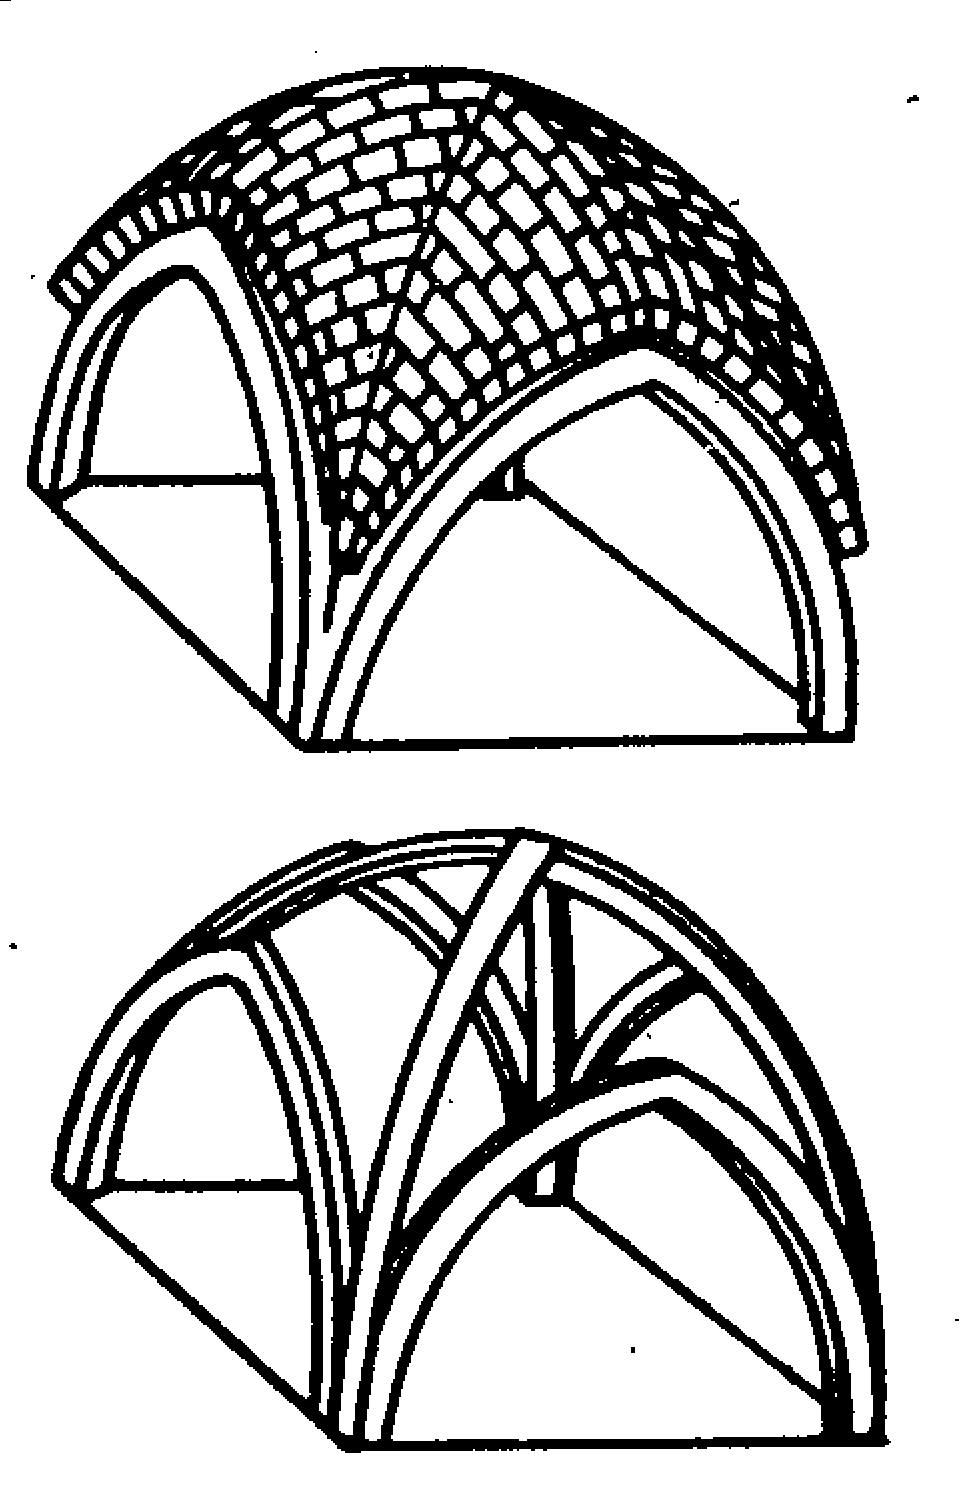 Sklepienie gotyckie krzyżowo -żebrowe Źródło: E.